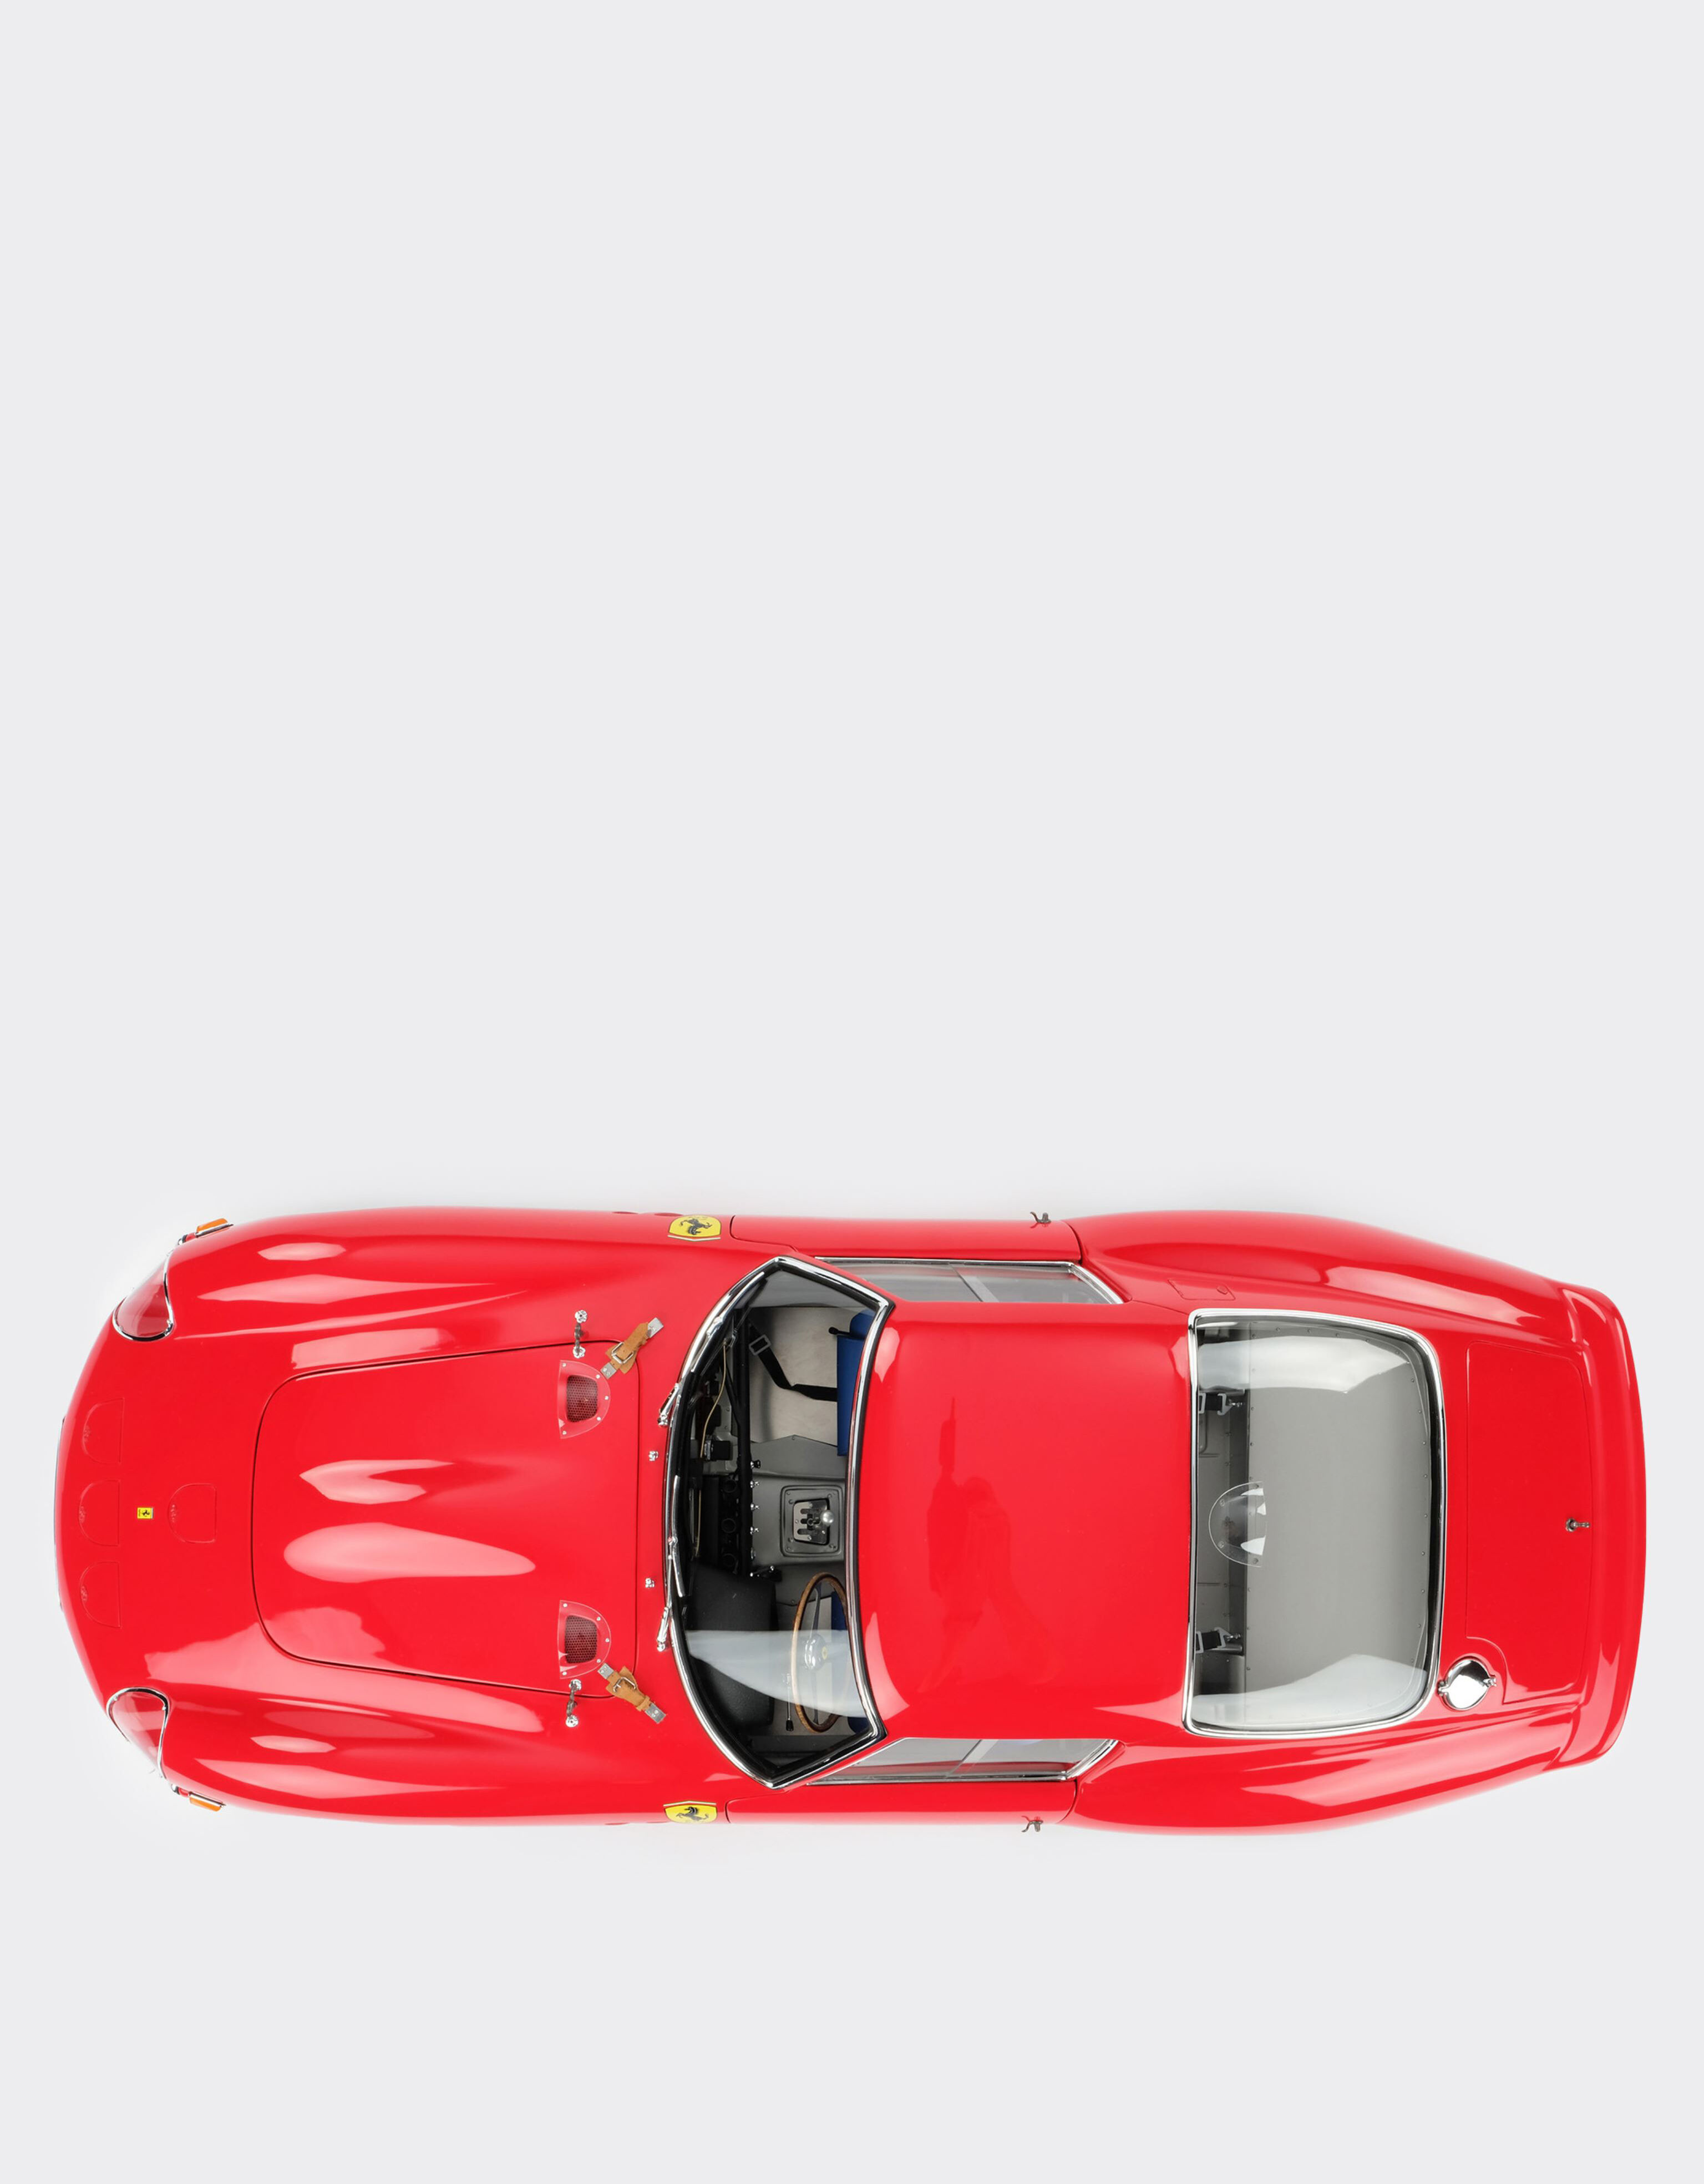 Ferrari Ferrari 250 GTO model in 1:8 scale MULTICOLOUR L1127f